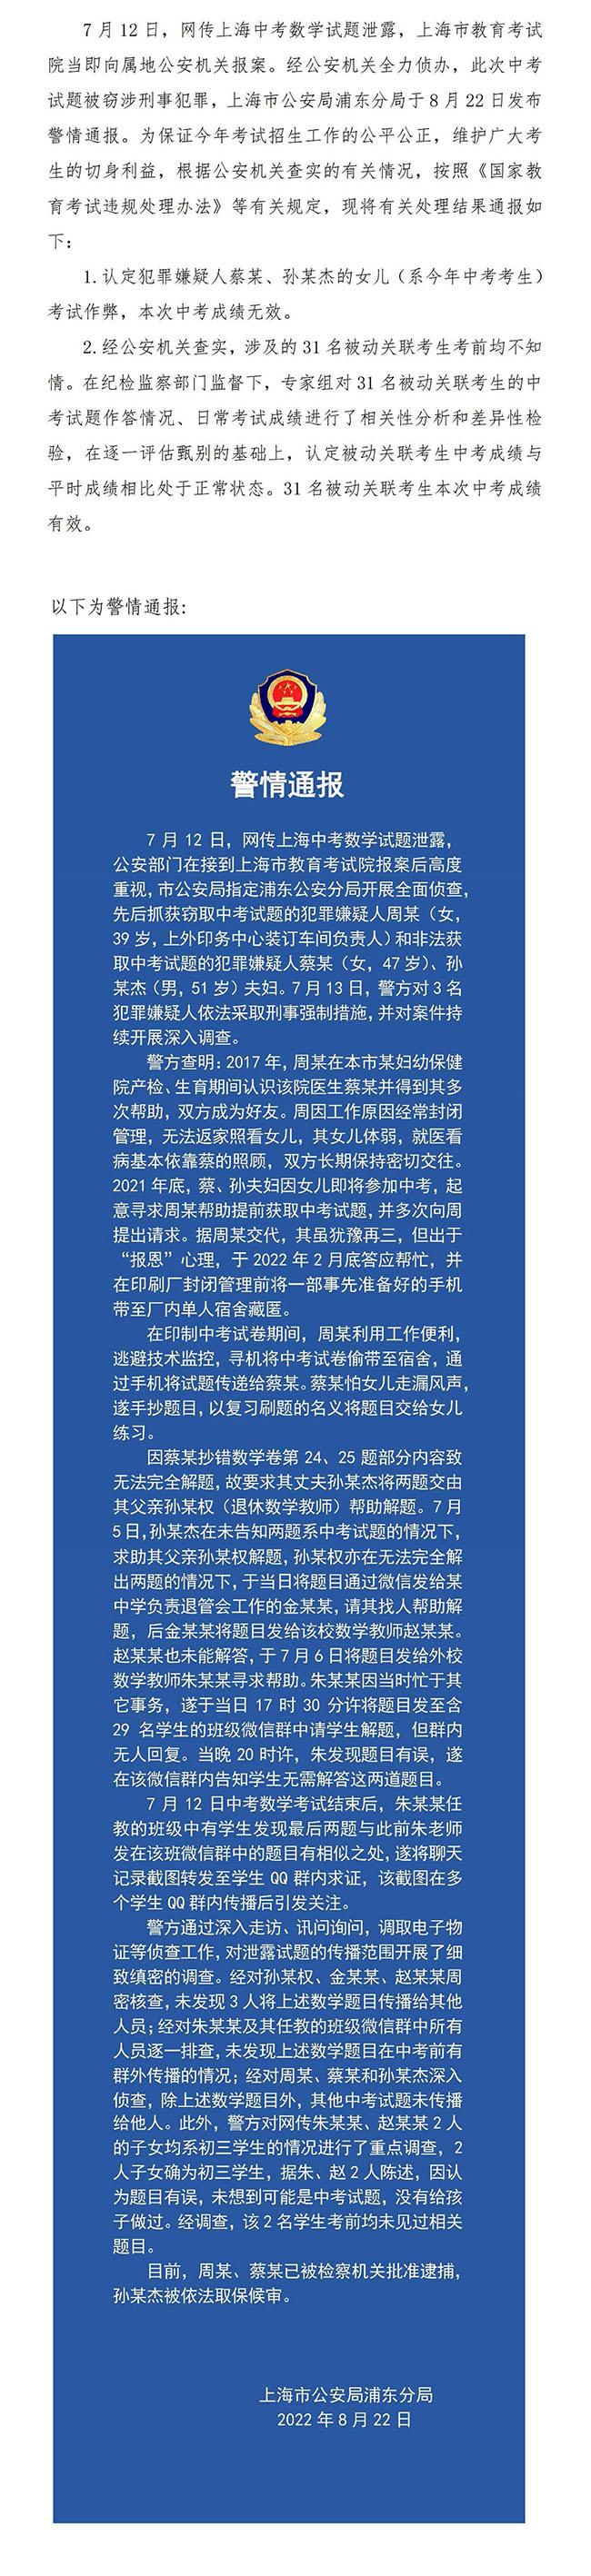 中国发布丨上海通报中考数学窃题事件处理情况 3人被采取刑事强制措施